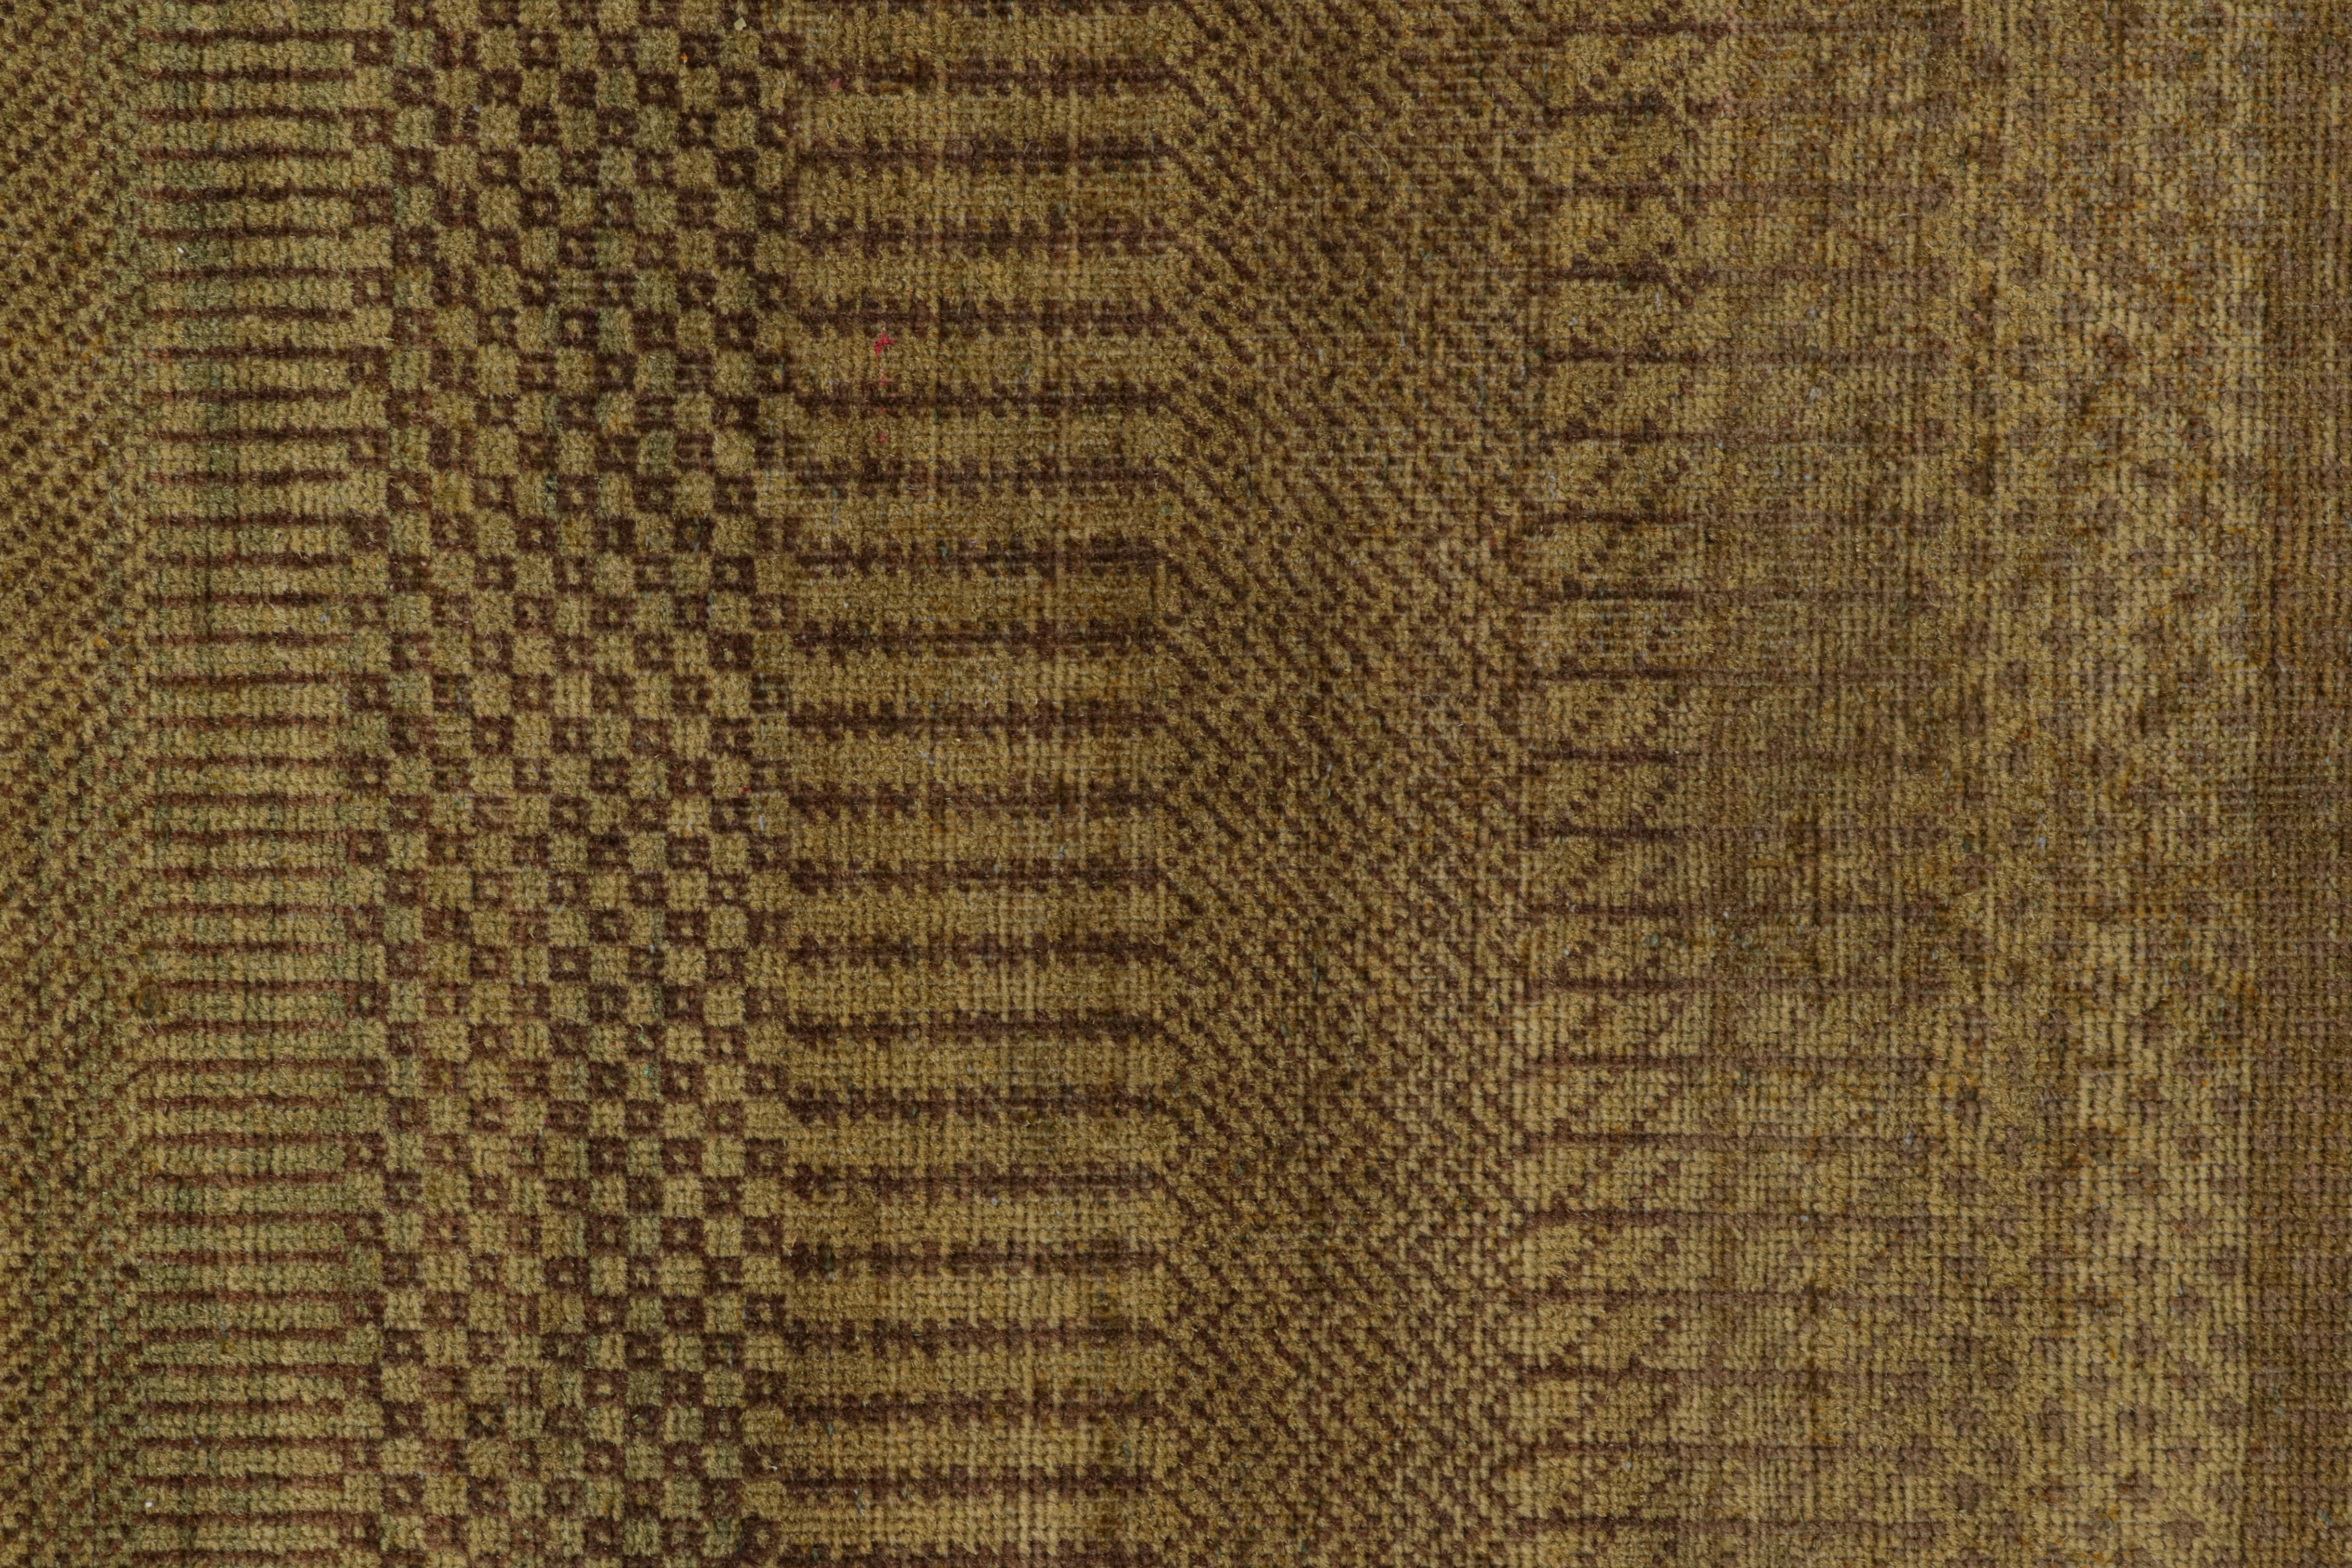 Rug & Kilim's Modern Textural Rug in Green, Brown and Gold Stripes and Striae (Tapis à rayures et à bandes vertes, brunes et dorées) en vente